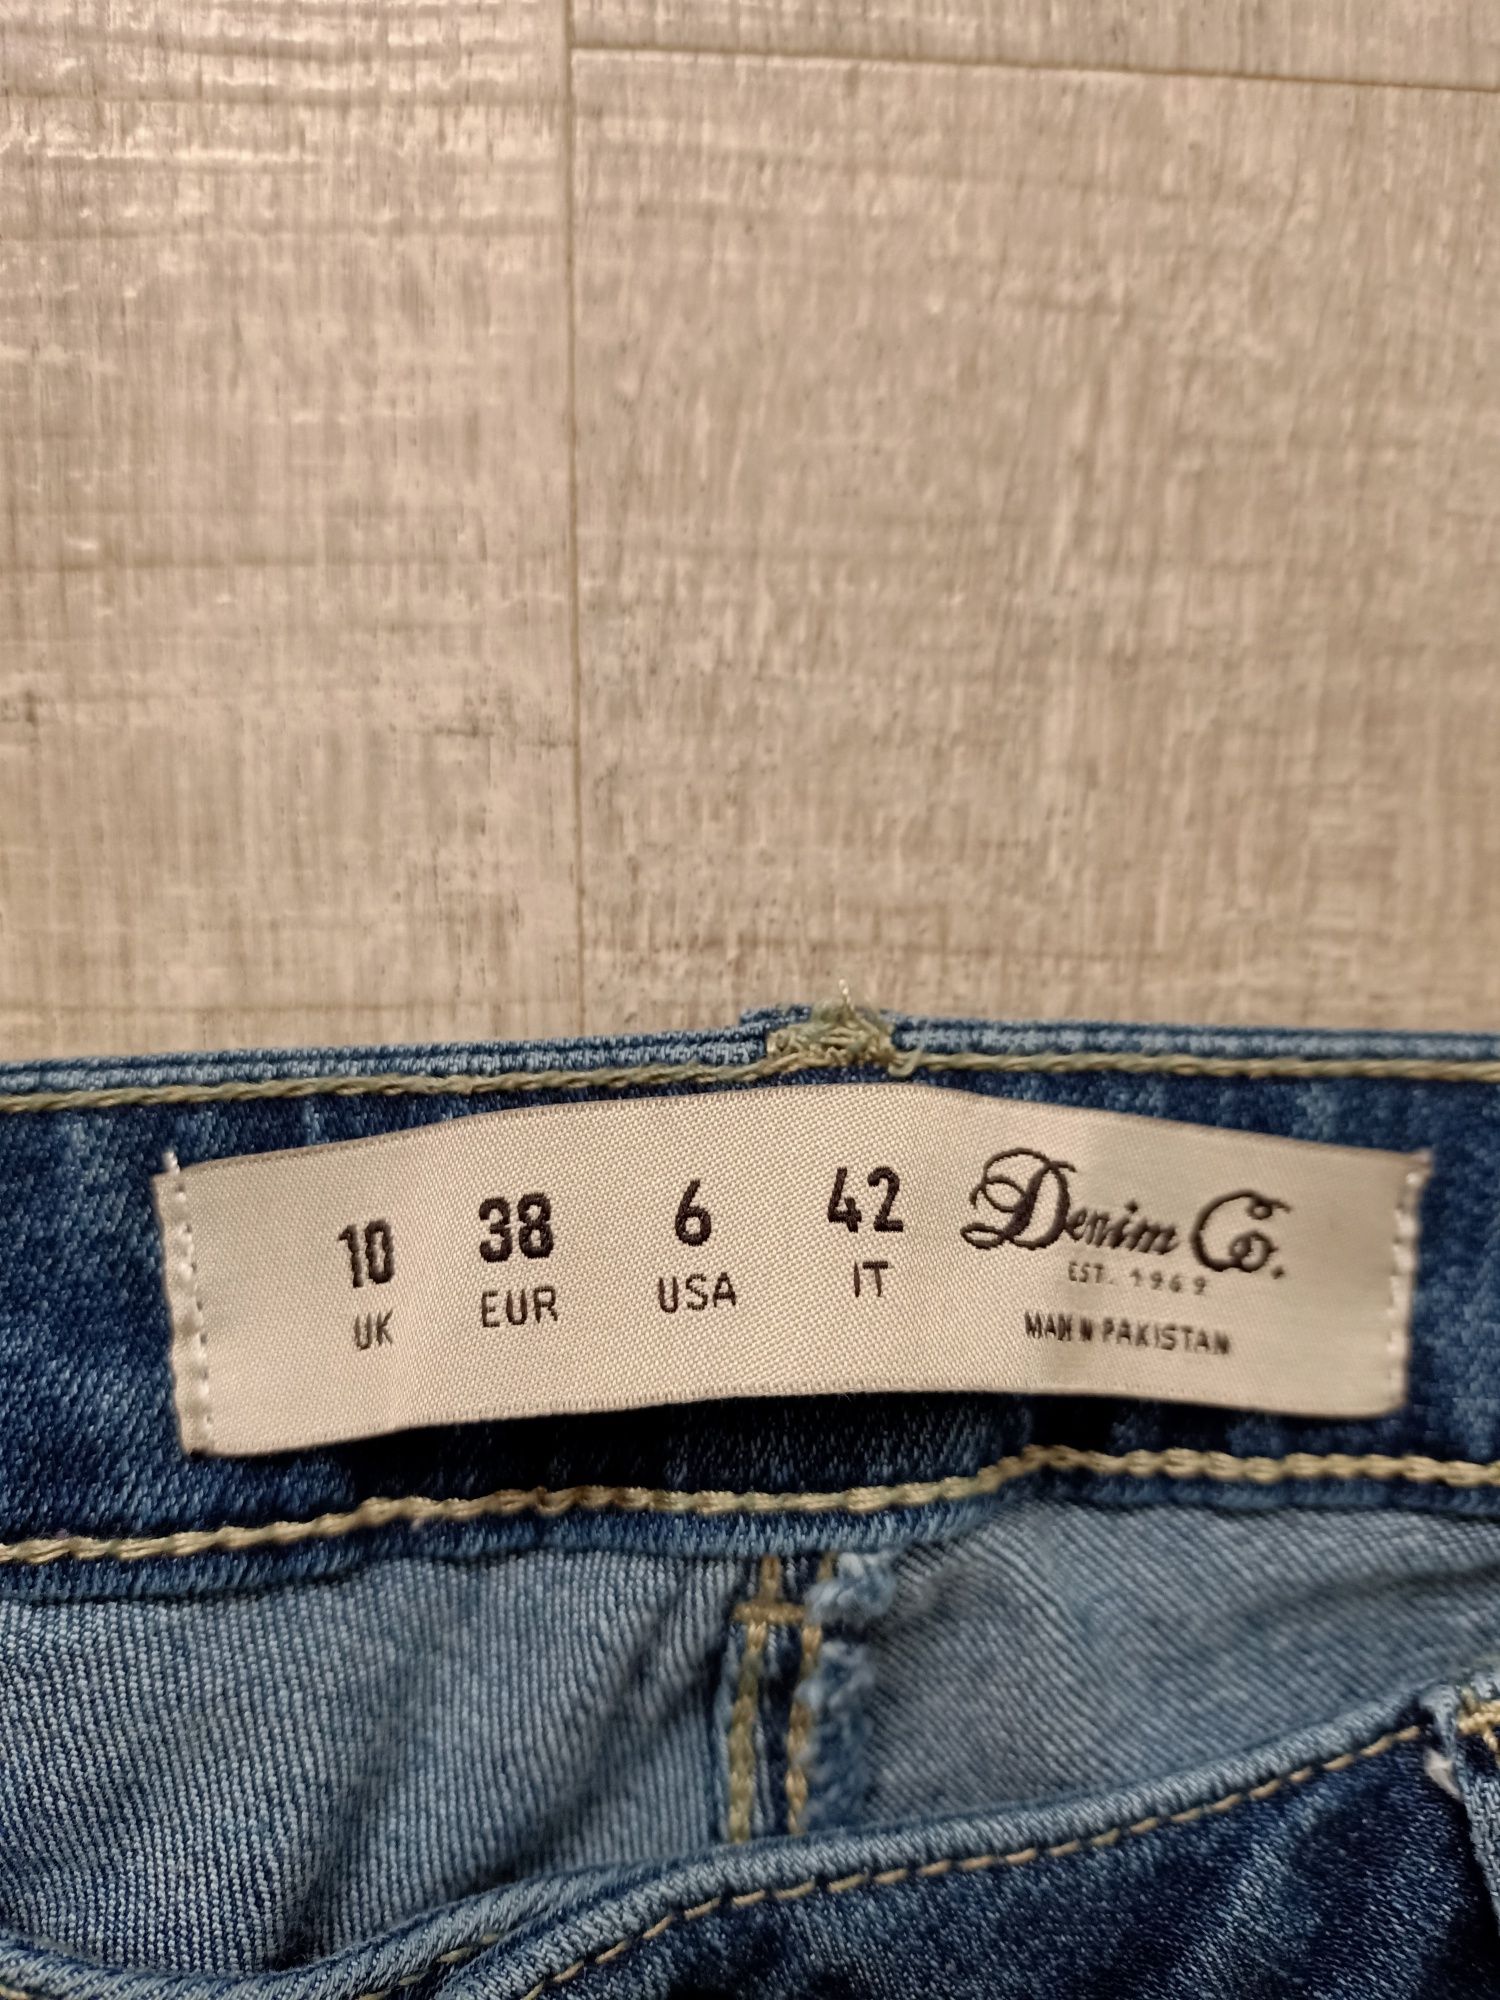 Jeansy firmy Denim rozmiar eur 38
 pas 76cm stan dobry. Zapraszam do o